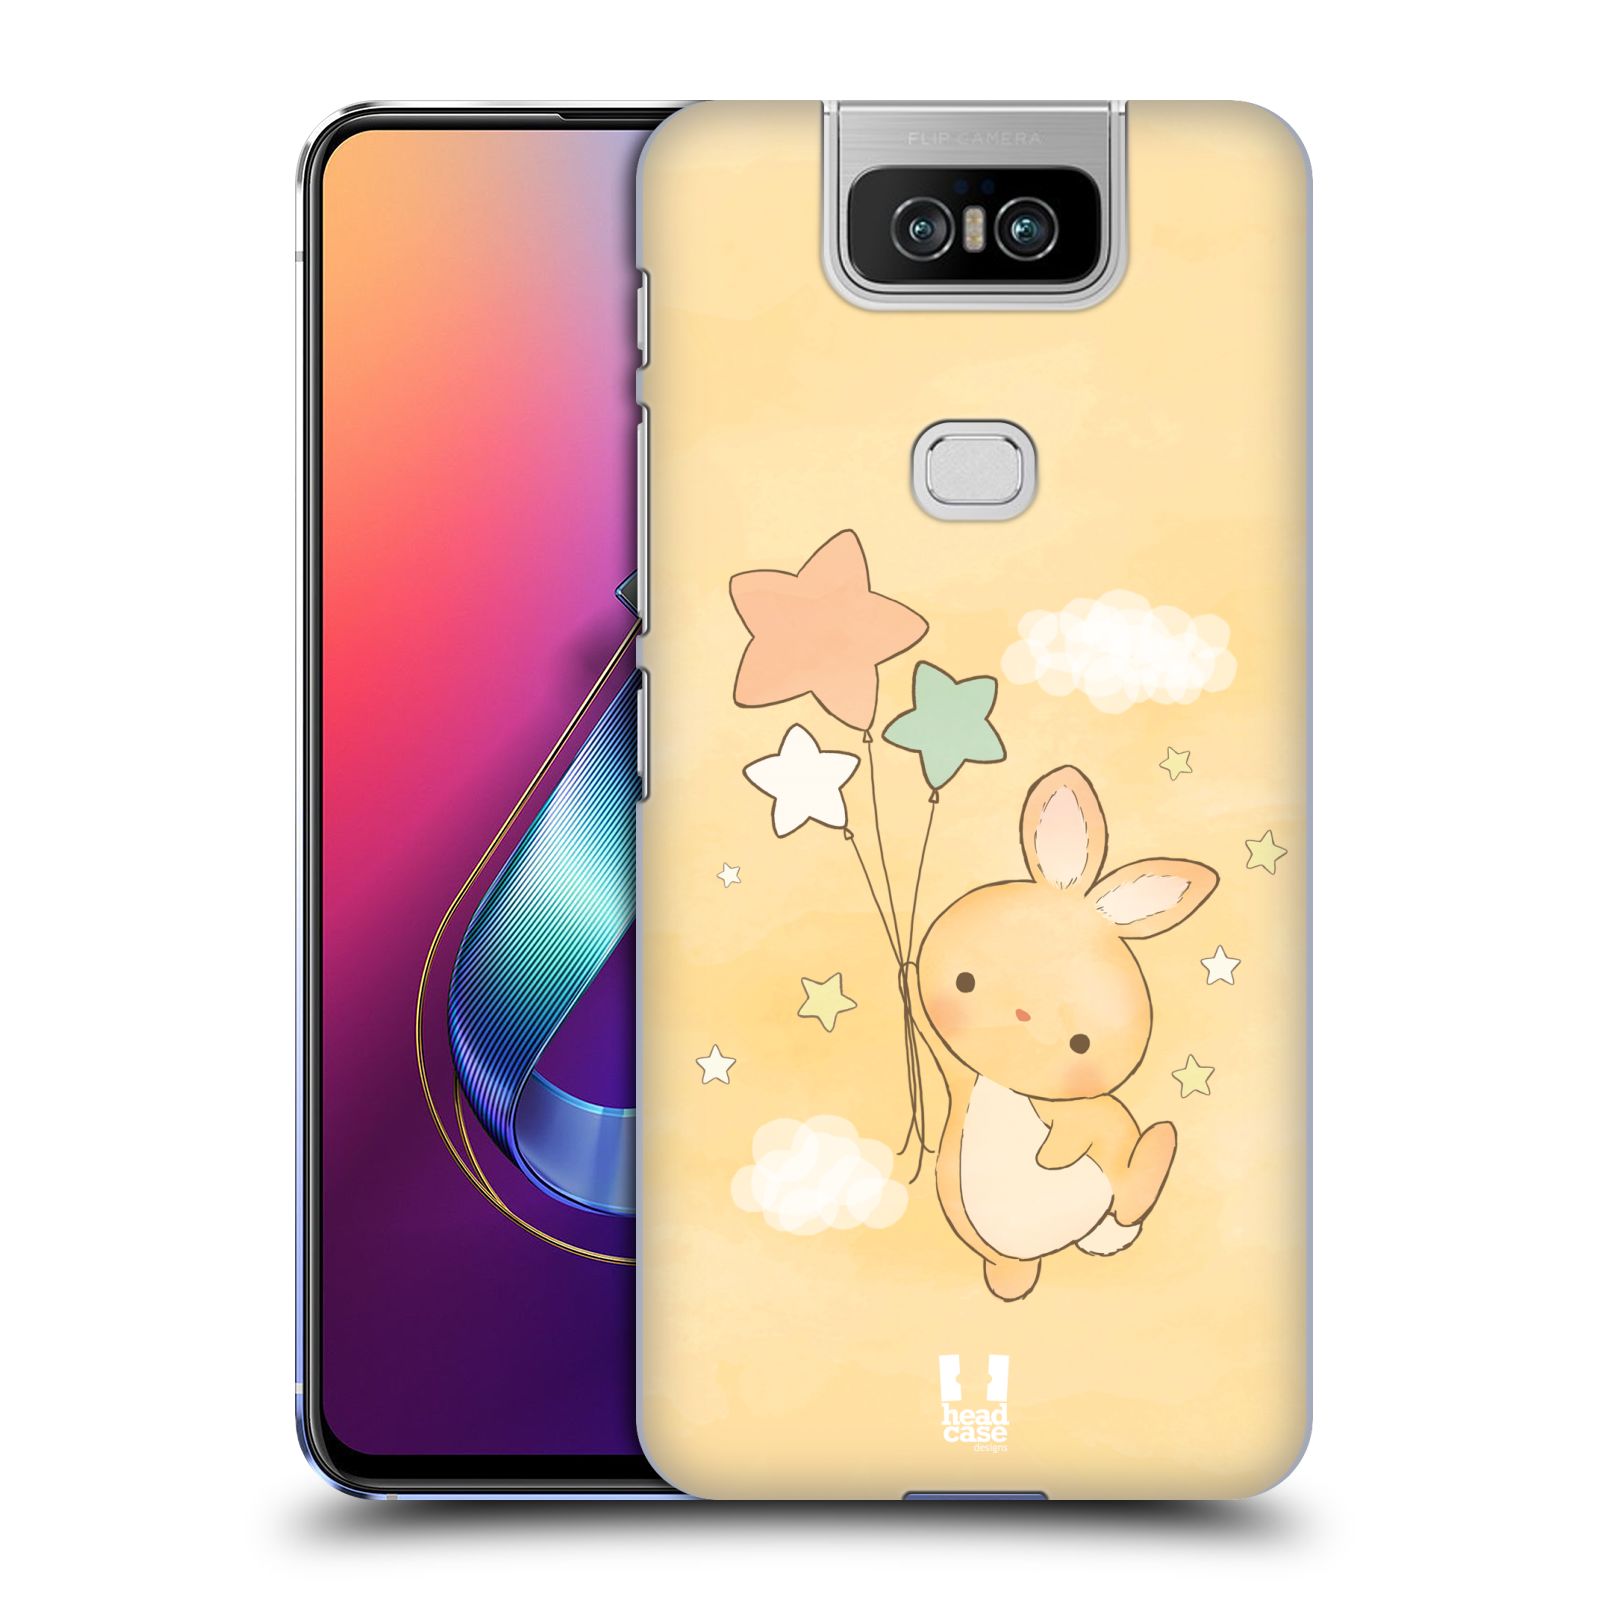 Pouzdro na mobil Asus Zenfone 6 ZS630KL - HEAD CASE - vzor králíček a hvězdy žlutá